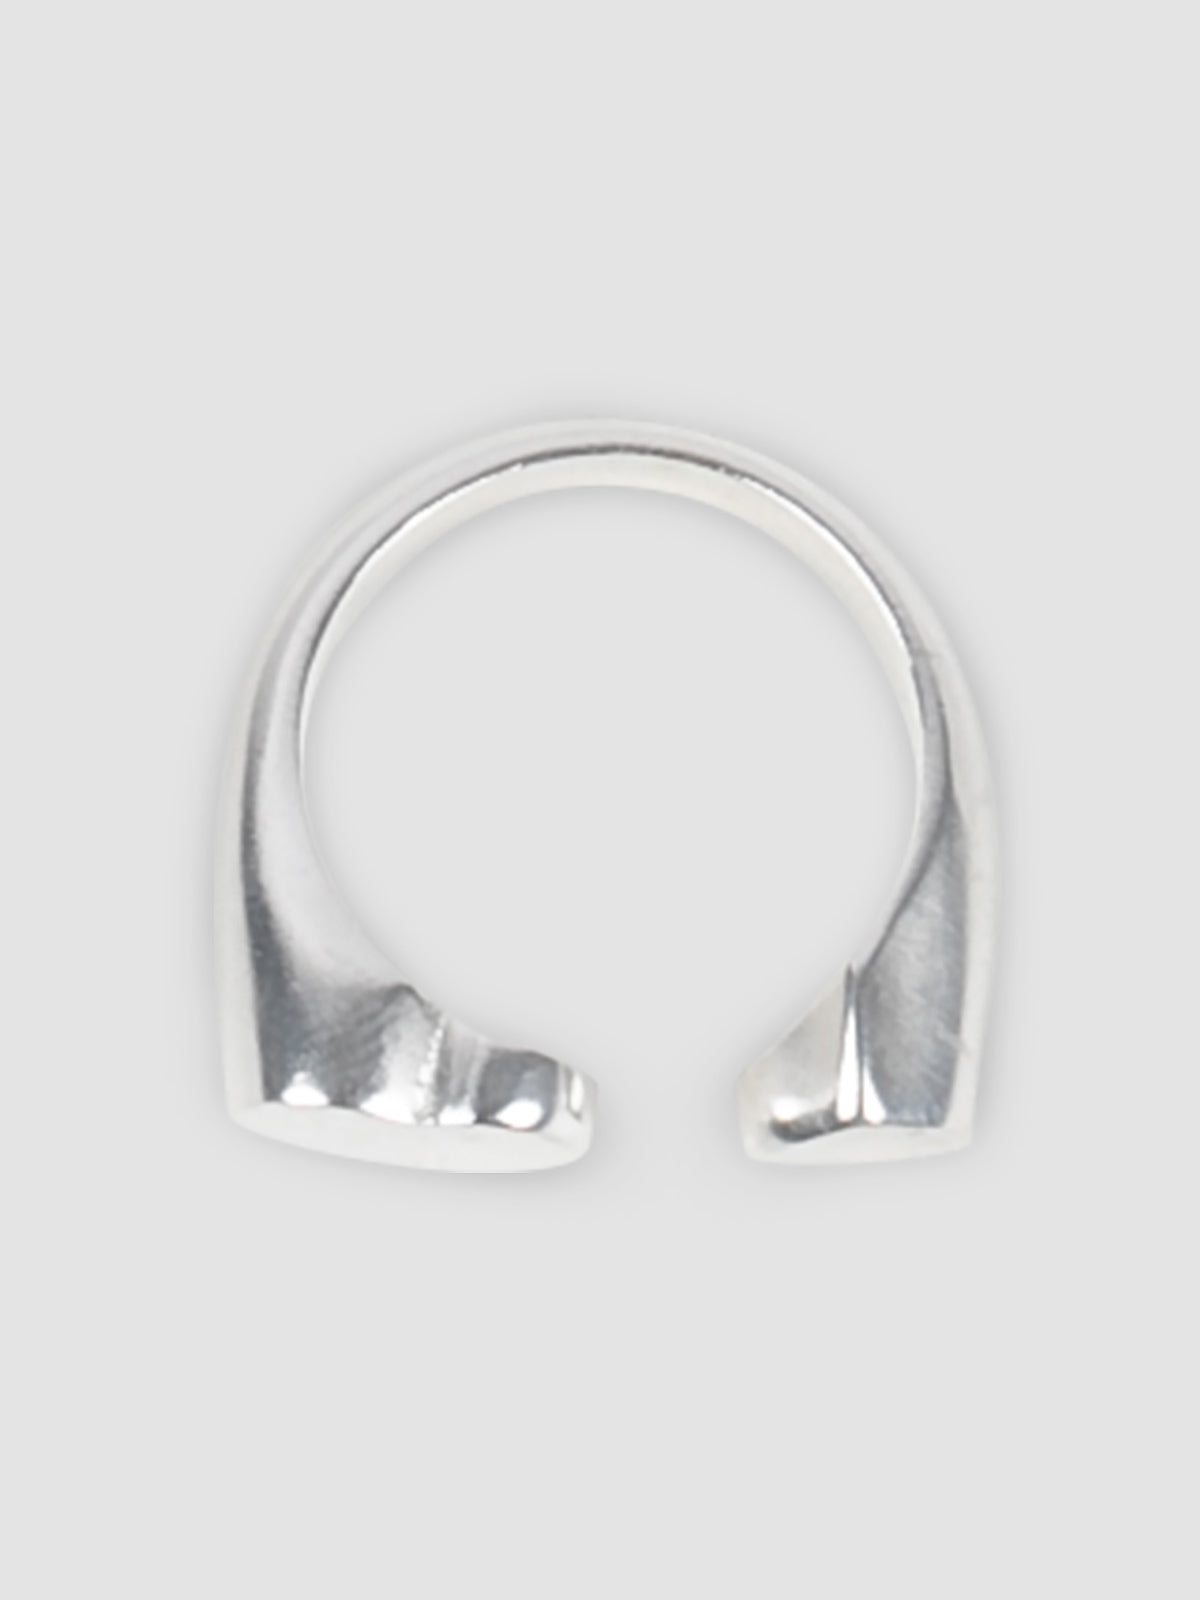 Silver Open Heart ring